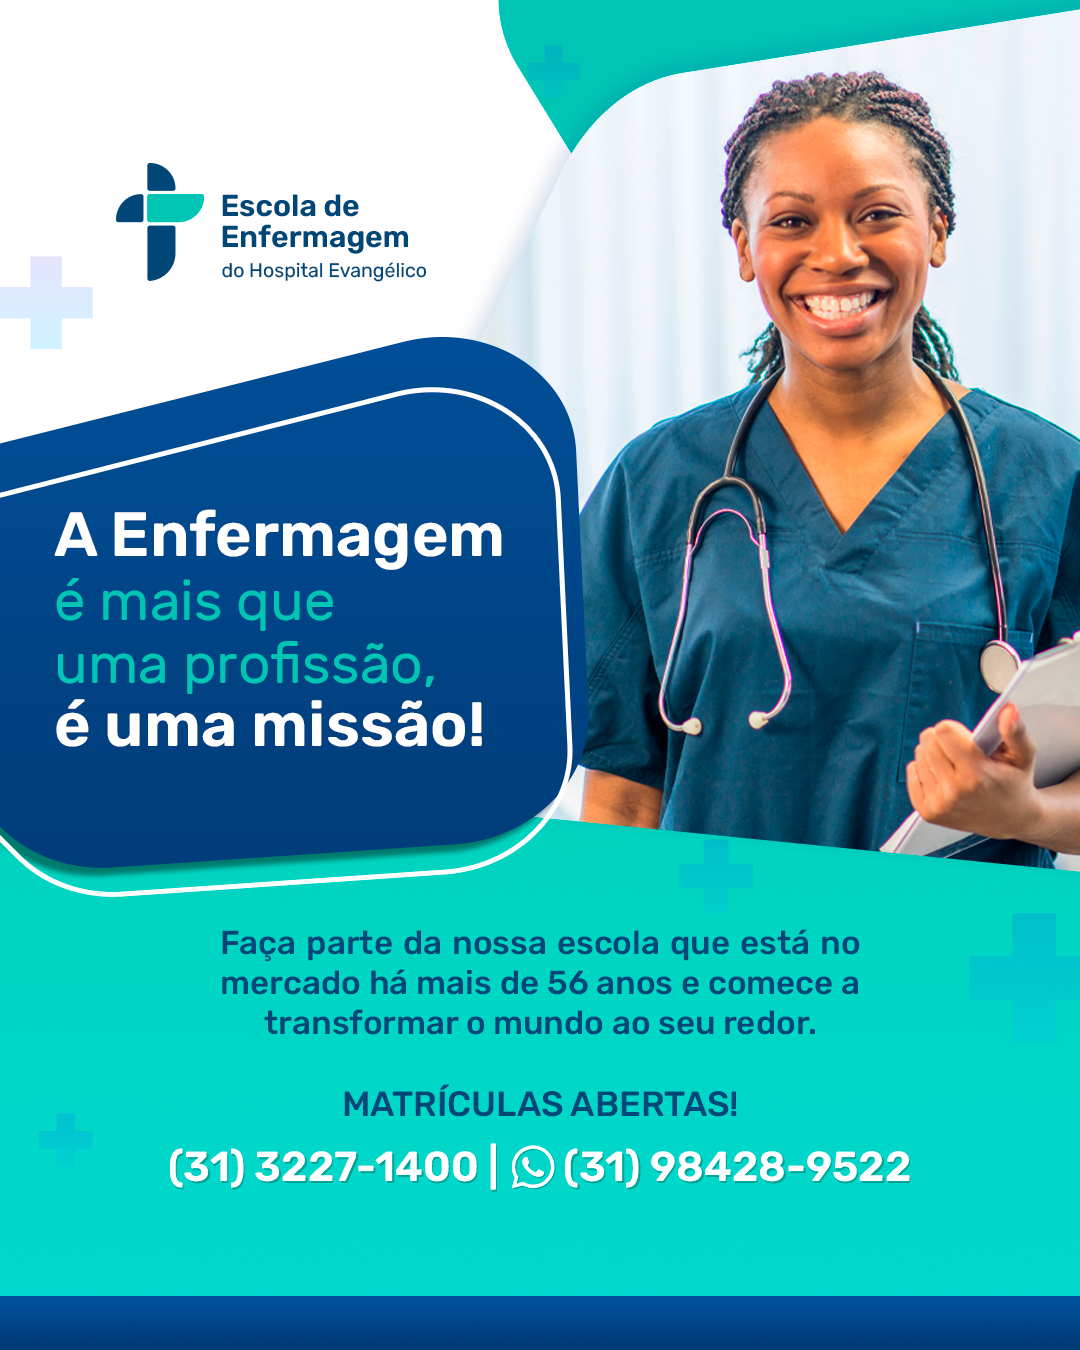 Hospital Evangélico de Belo Horizonte - A Associação Evangélica Beneficente  de Minas Gerais, desde 1946, atua na área da saúde e é mantenedora das  unidades: Hospital Evangélico de Belo Horizonte; Centro de